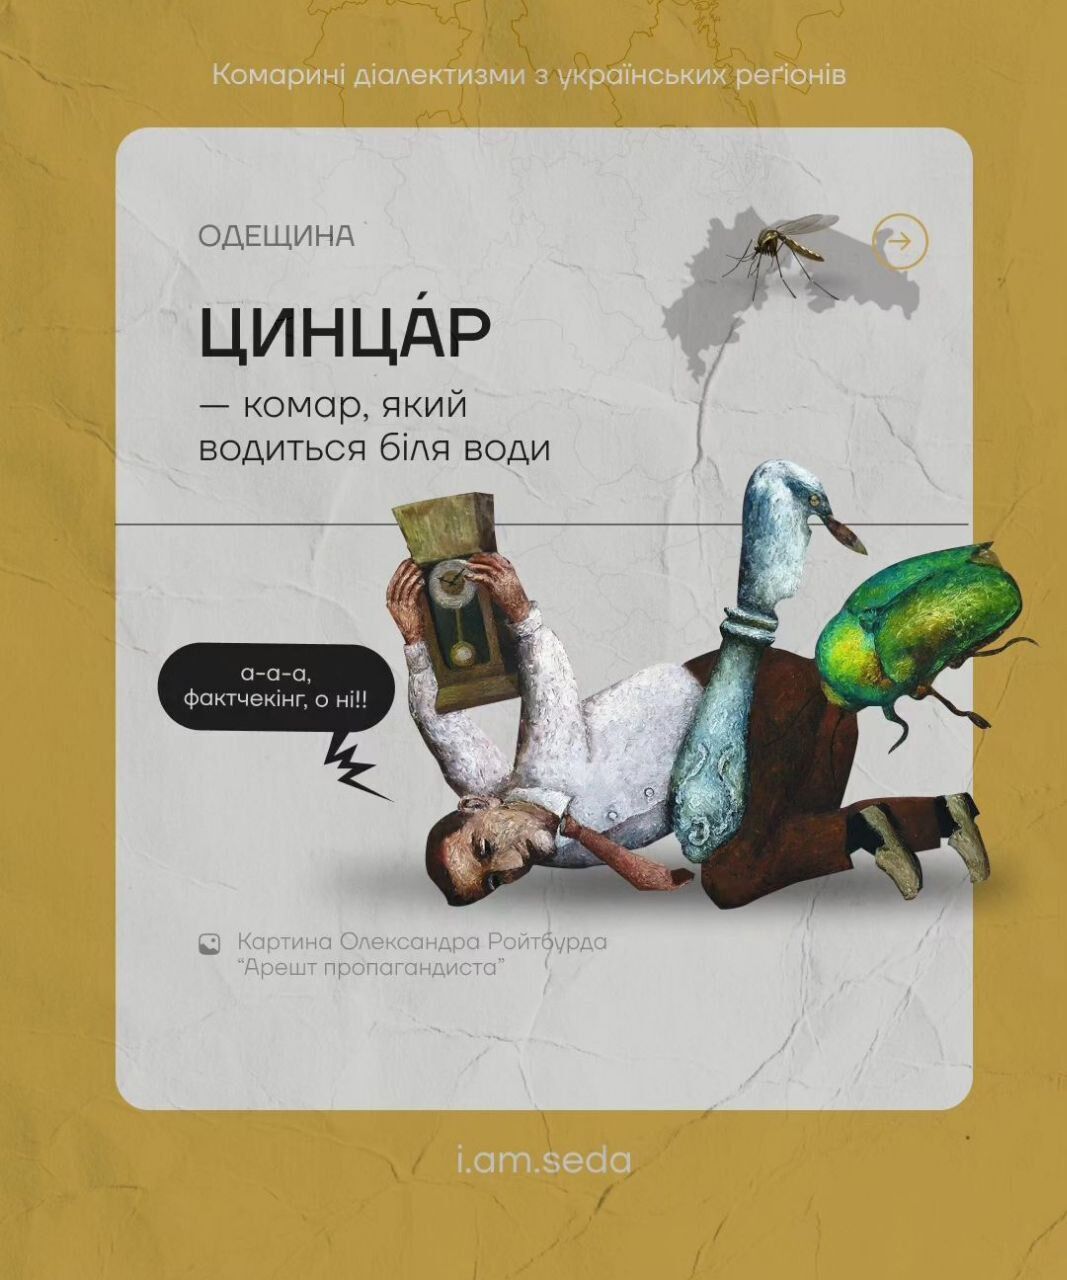 Цинцар, овадня та лярва: що спільного в українських ''комариних діалектизмах''